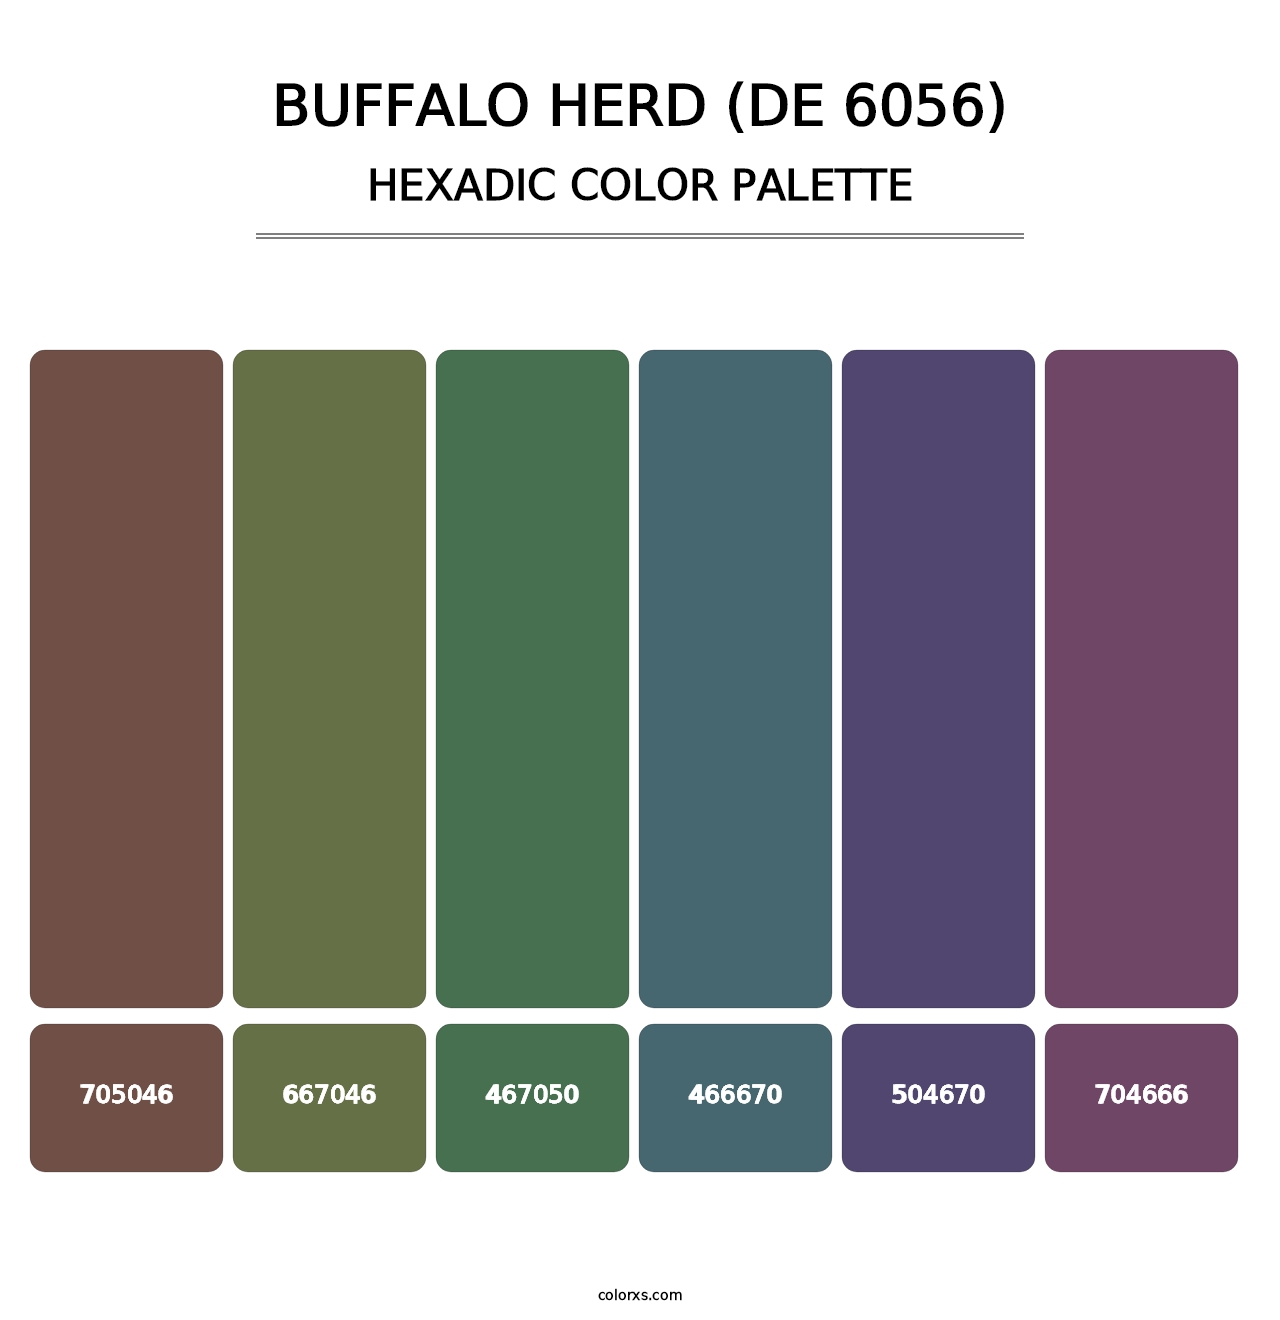 Buffalo Herd (DE 6056) - Hexadic Color Palette